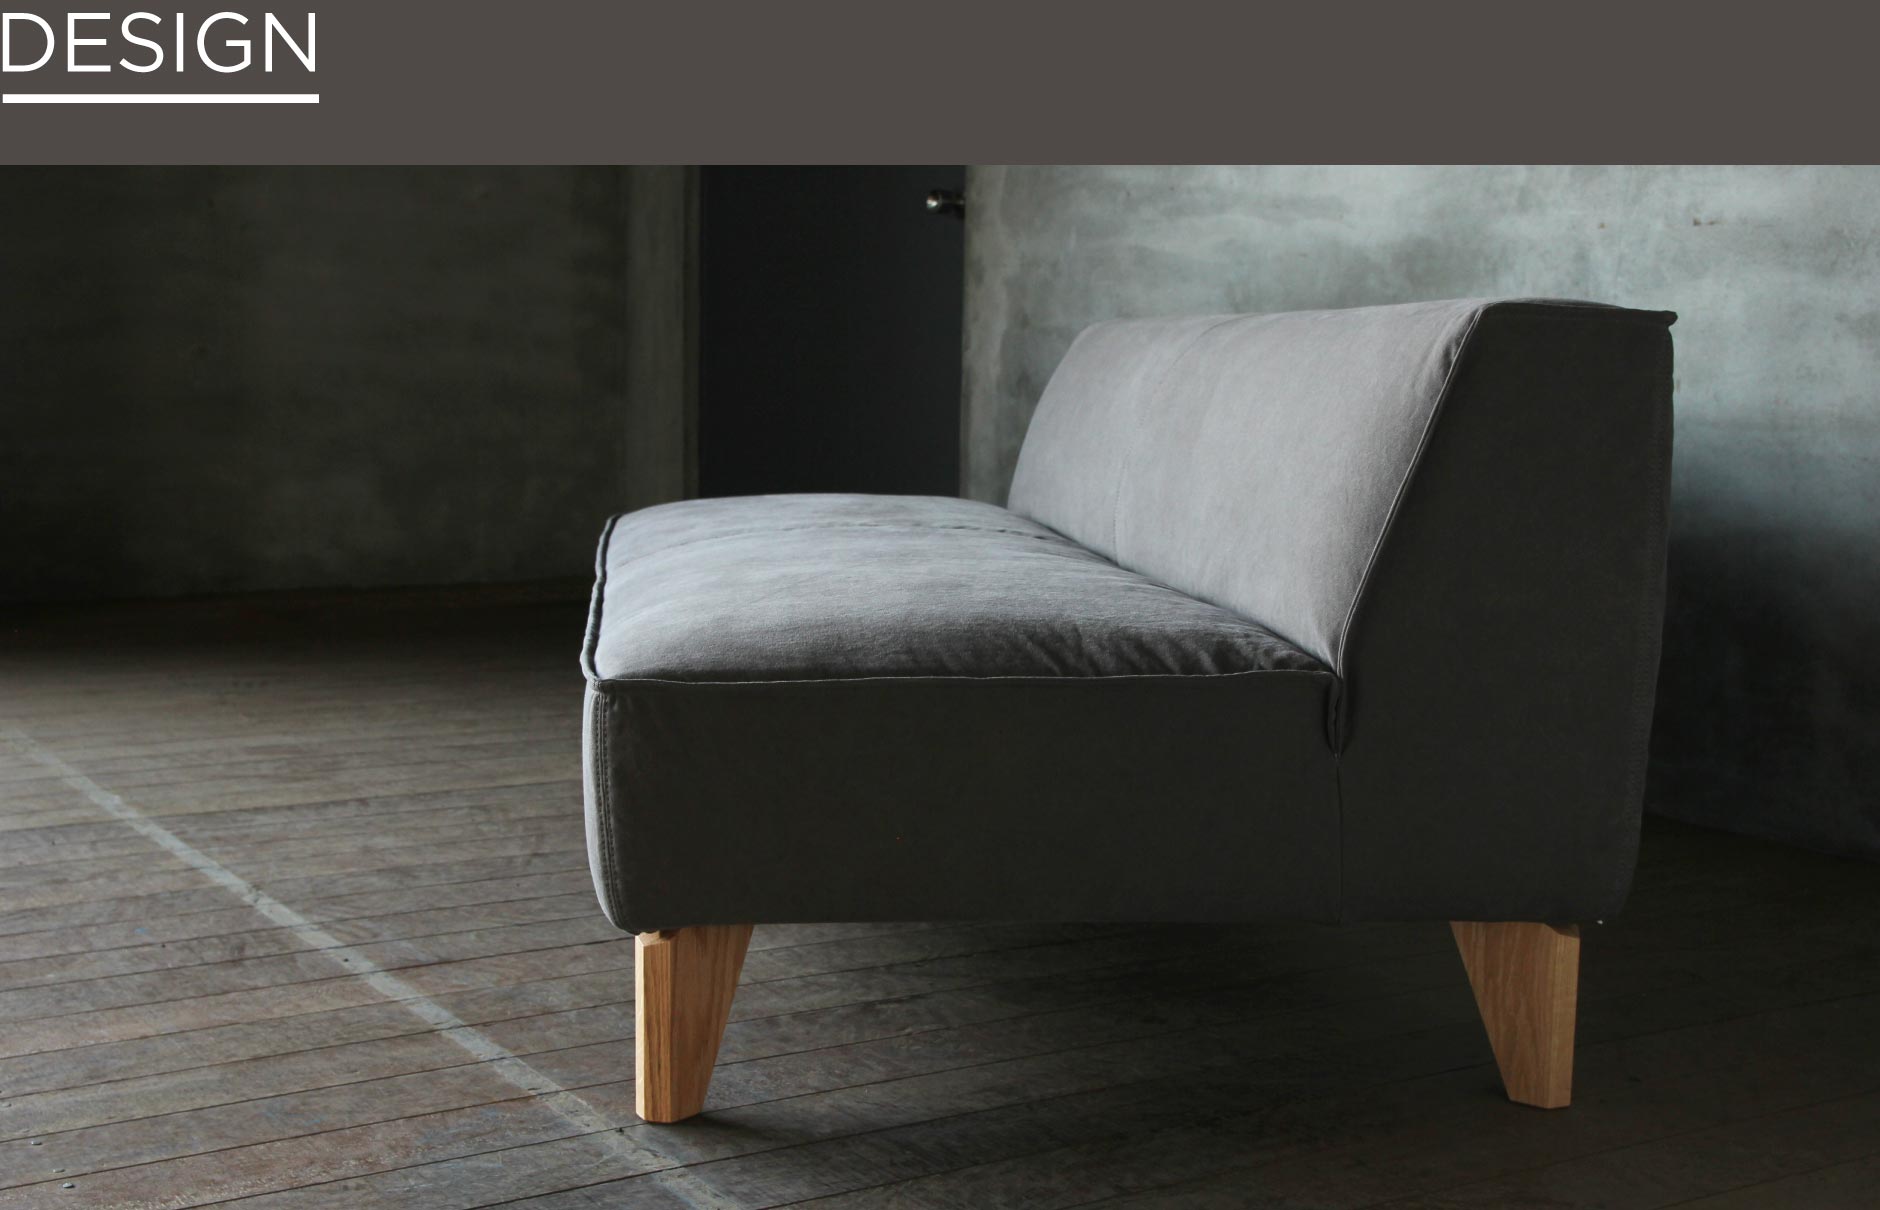 SOLID福岡の家具の中でも人気のアームレスタイプのソファ。総張りタイプで背も低いのでどこからでも座っていただけます。